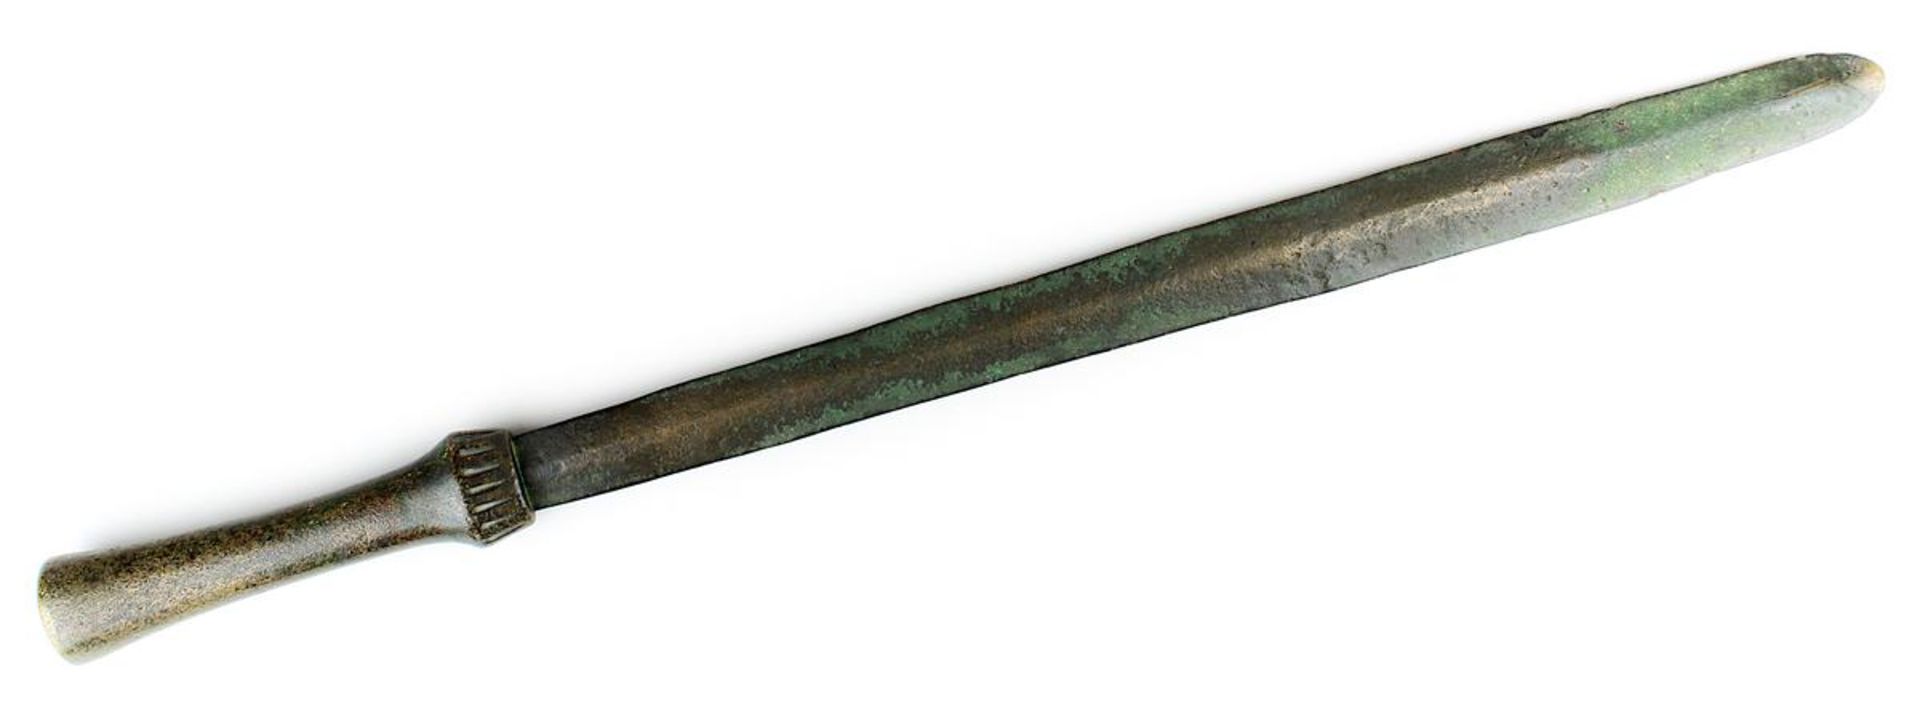 Kurzschwert aus Bronze, wohl Replik nach Vorbild der Bronzezeit, Gesamtlänge 52,5 cm, B 3 cm,